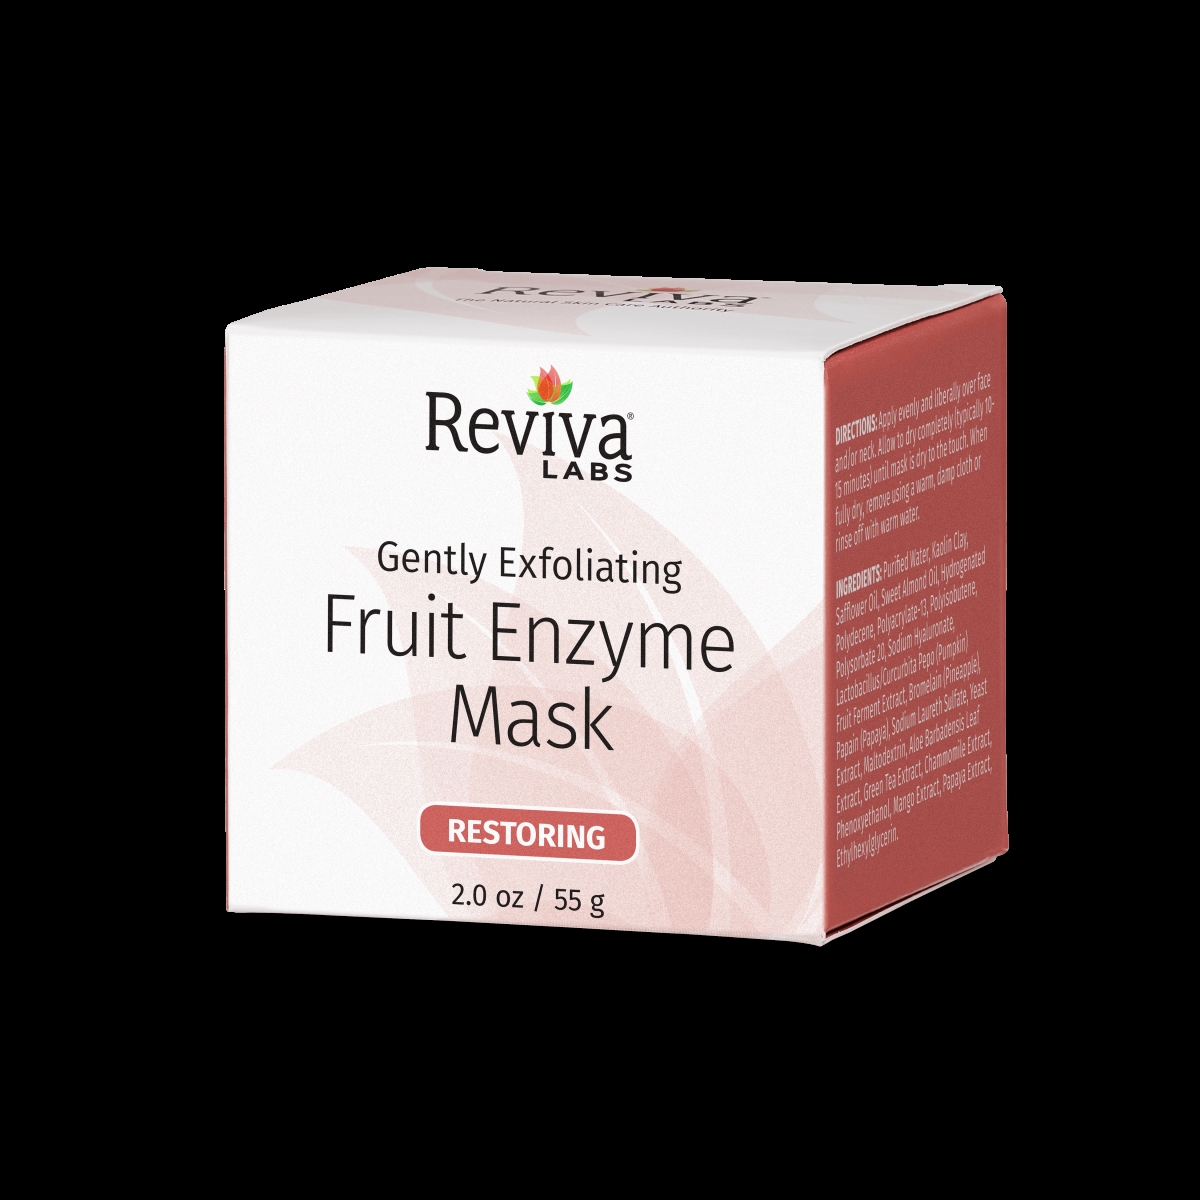 R077 2 Oz Fruit Enzyme Mask Gently Exfoliating - Case Of 6